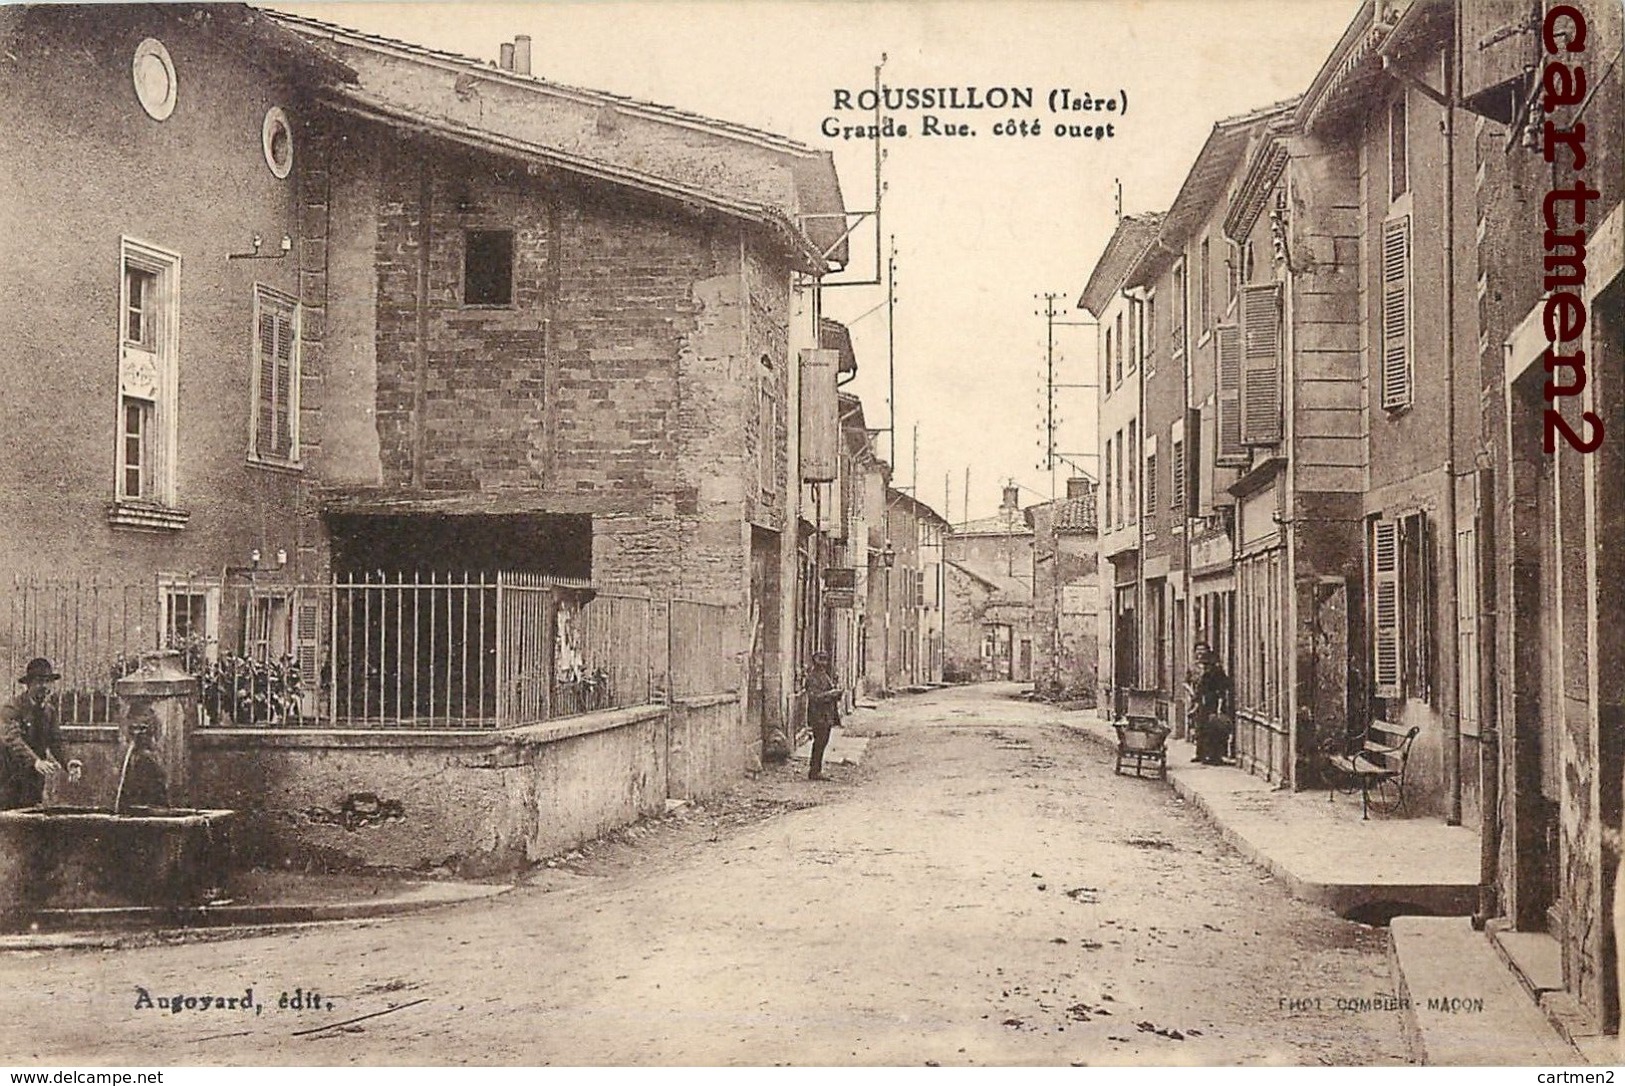 ROUSSILLON GRANDE-RUE COTE OUEST 38 - Roussillon